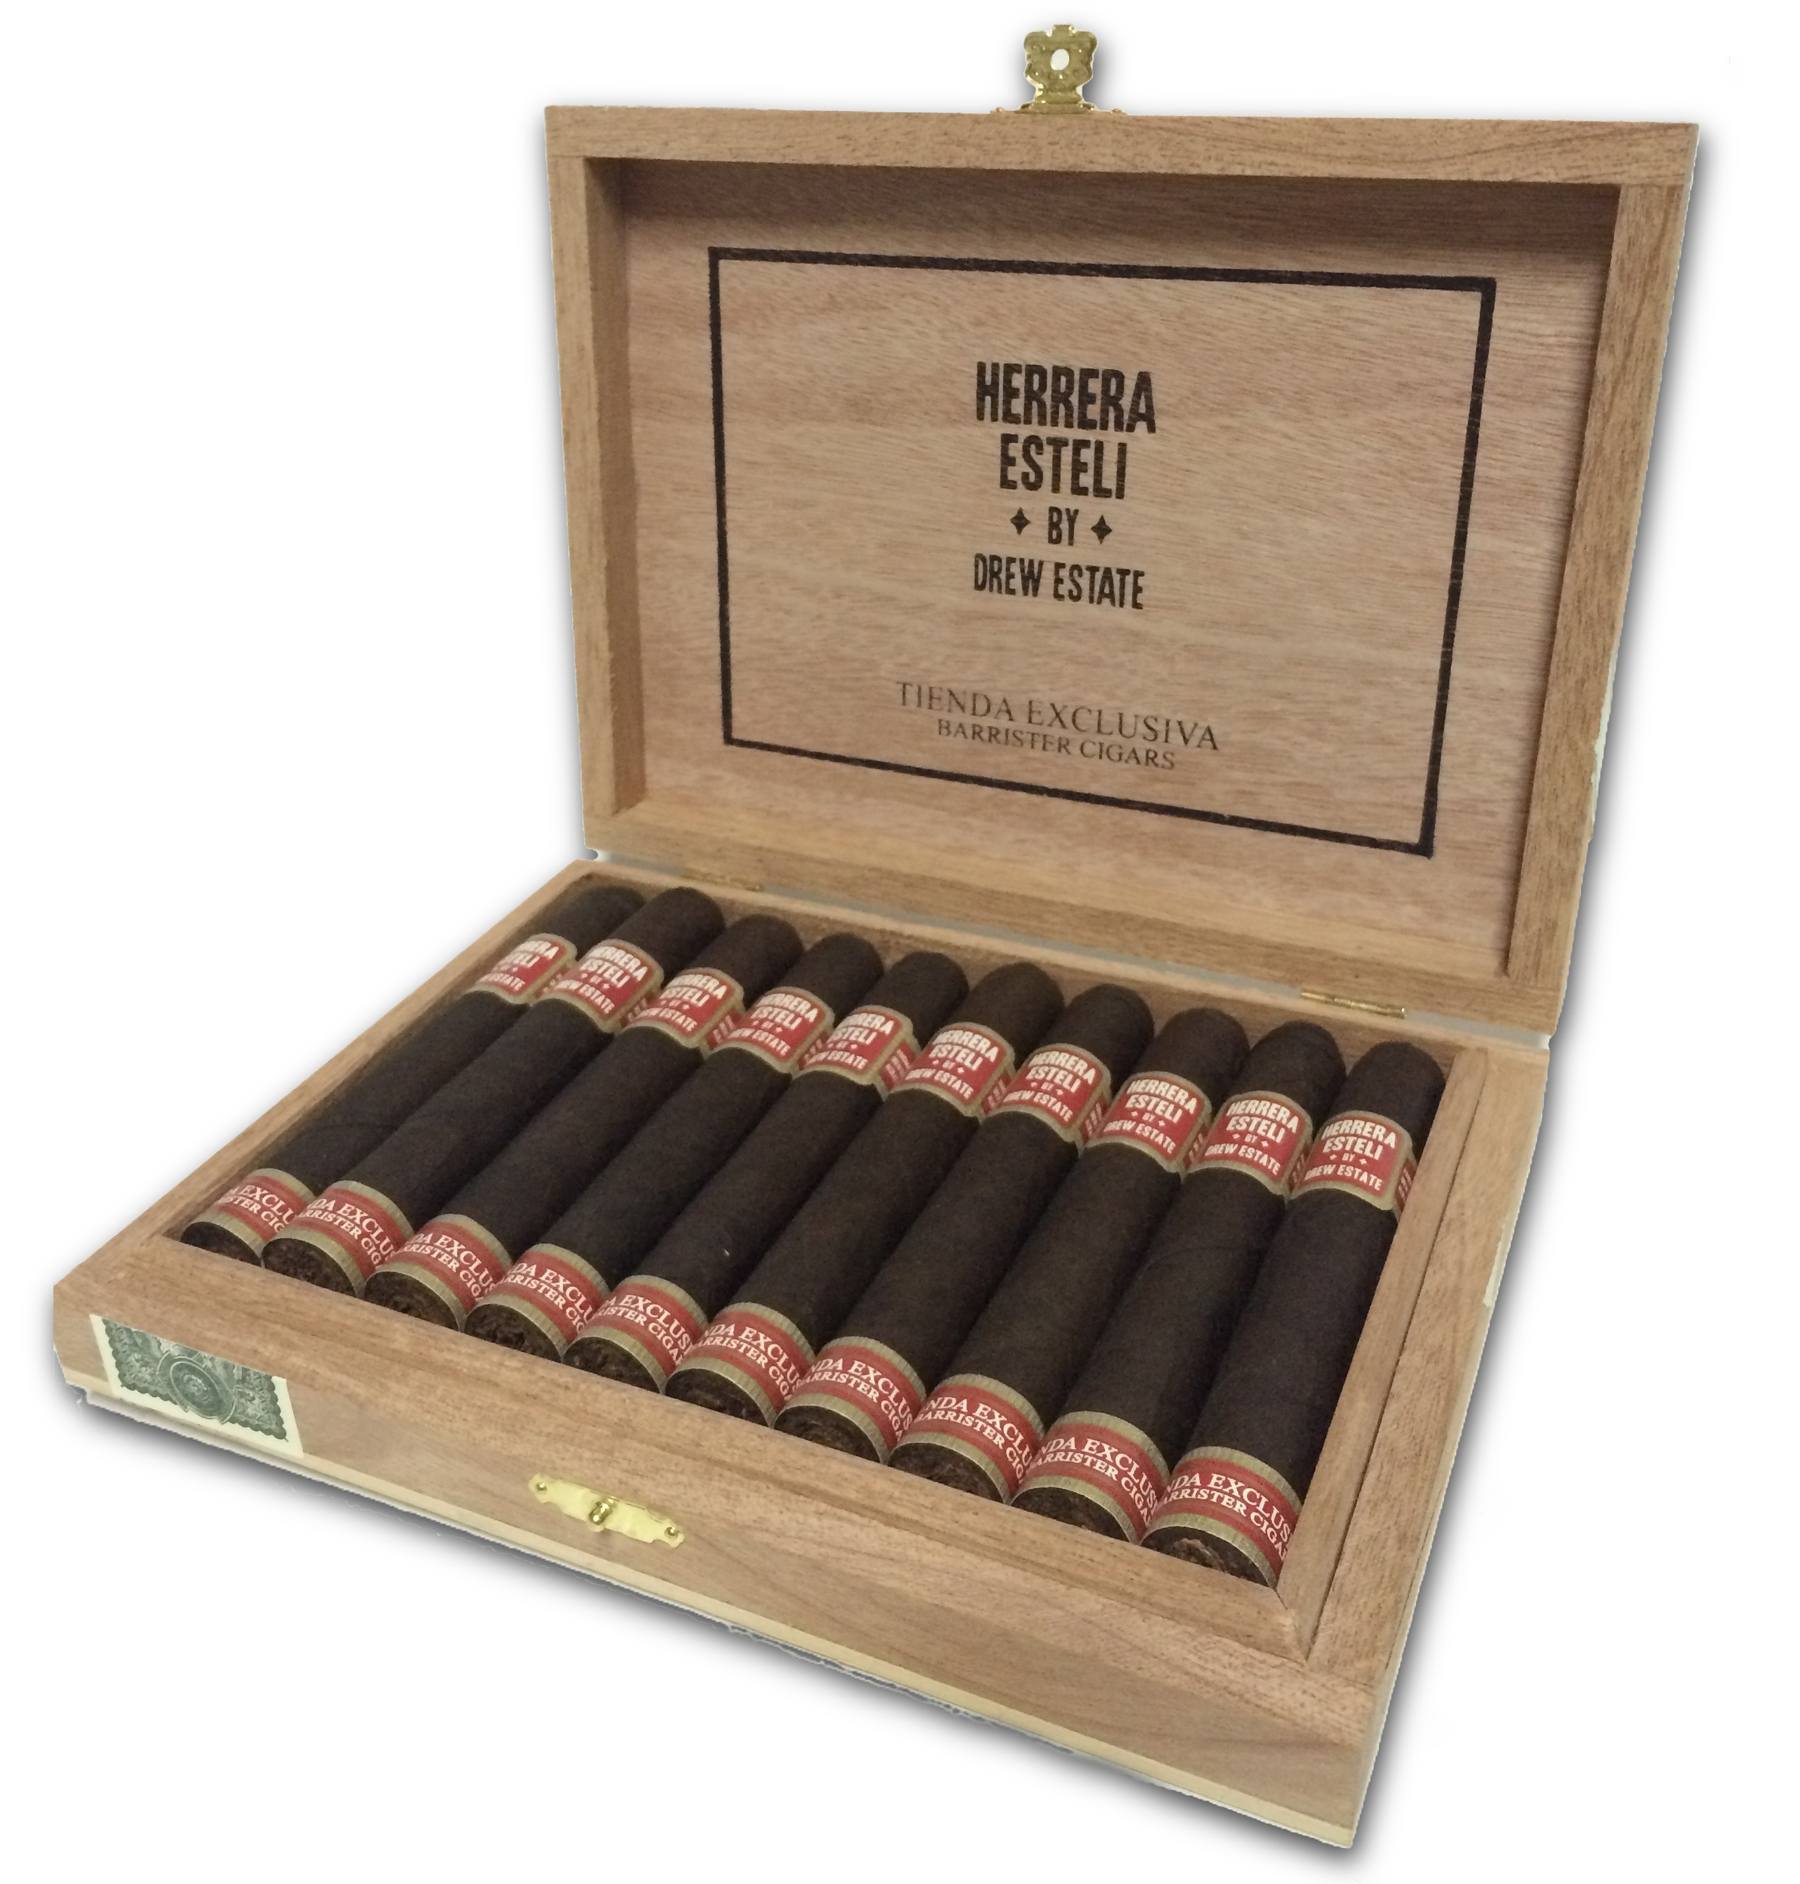 Herrera Esteli Tienda Exclusiva Barrister Cigars open box-1800px